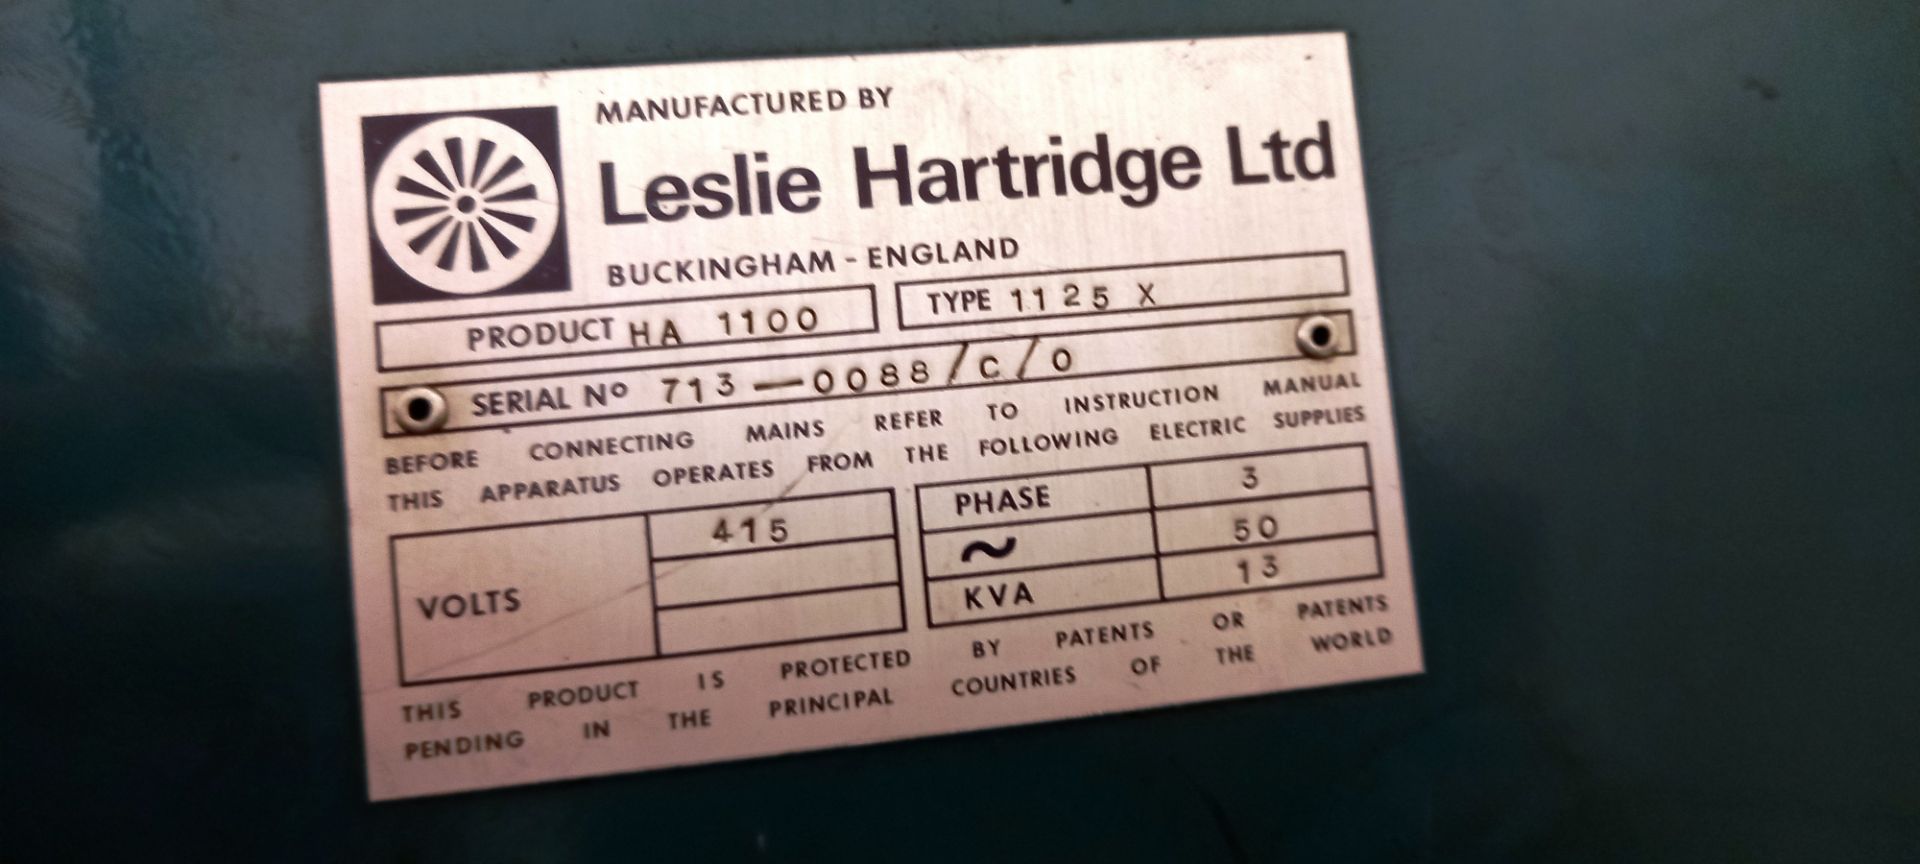 Hartridge Series 1100 MK2 Diesel Pump & Injector Test Rig type 11258, Phase 3,serial number 713- - Image 6 of 6